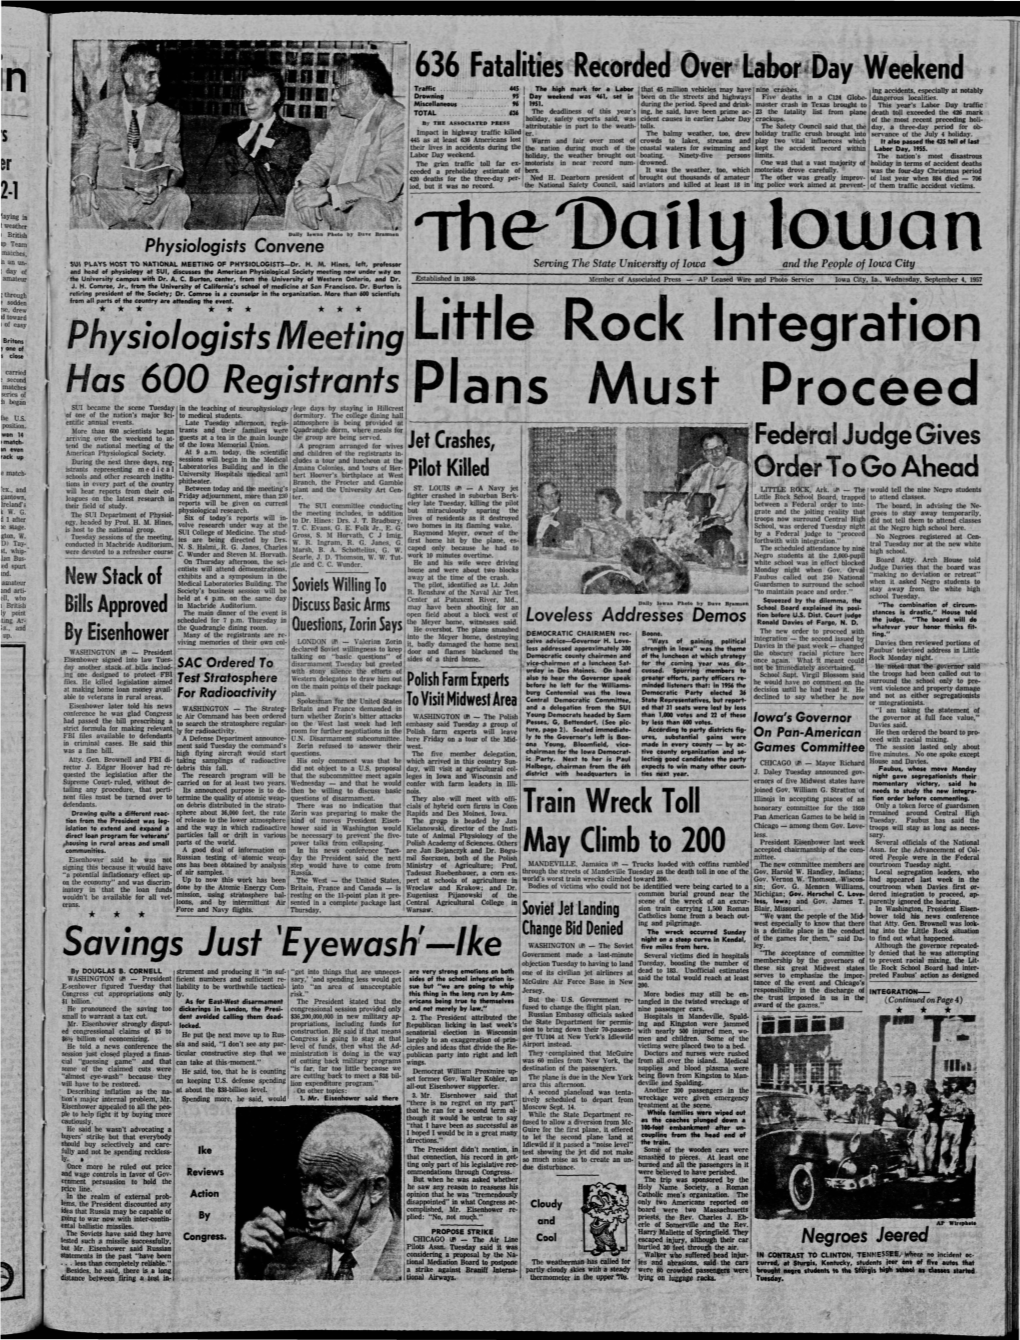 Daily Iowan (Iowa City, Iowa), 1957-09-04